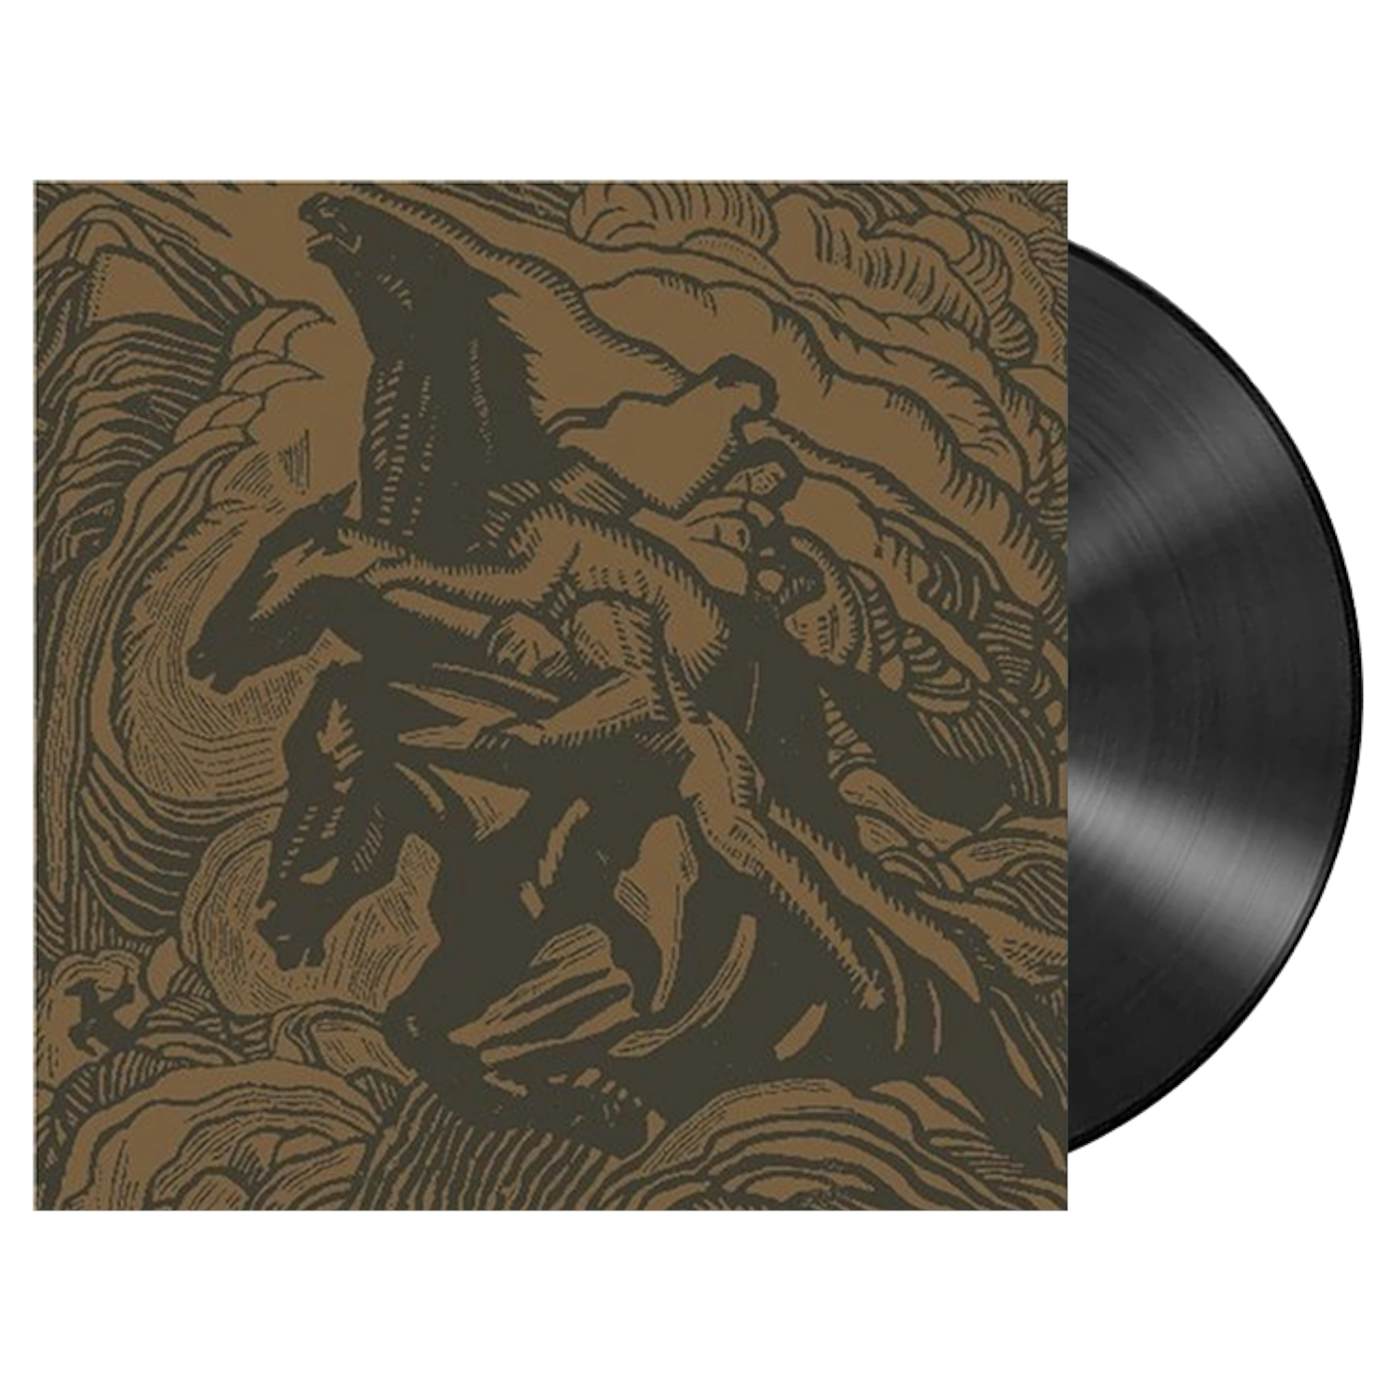 Sunn 0))) - '3: Flight Of The Behemoth' 2xLP (Black) (Vinyl)